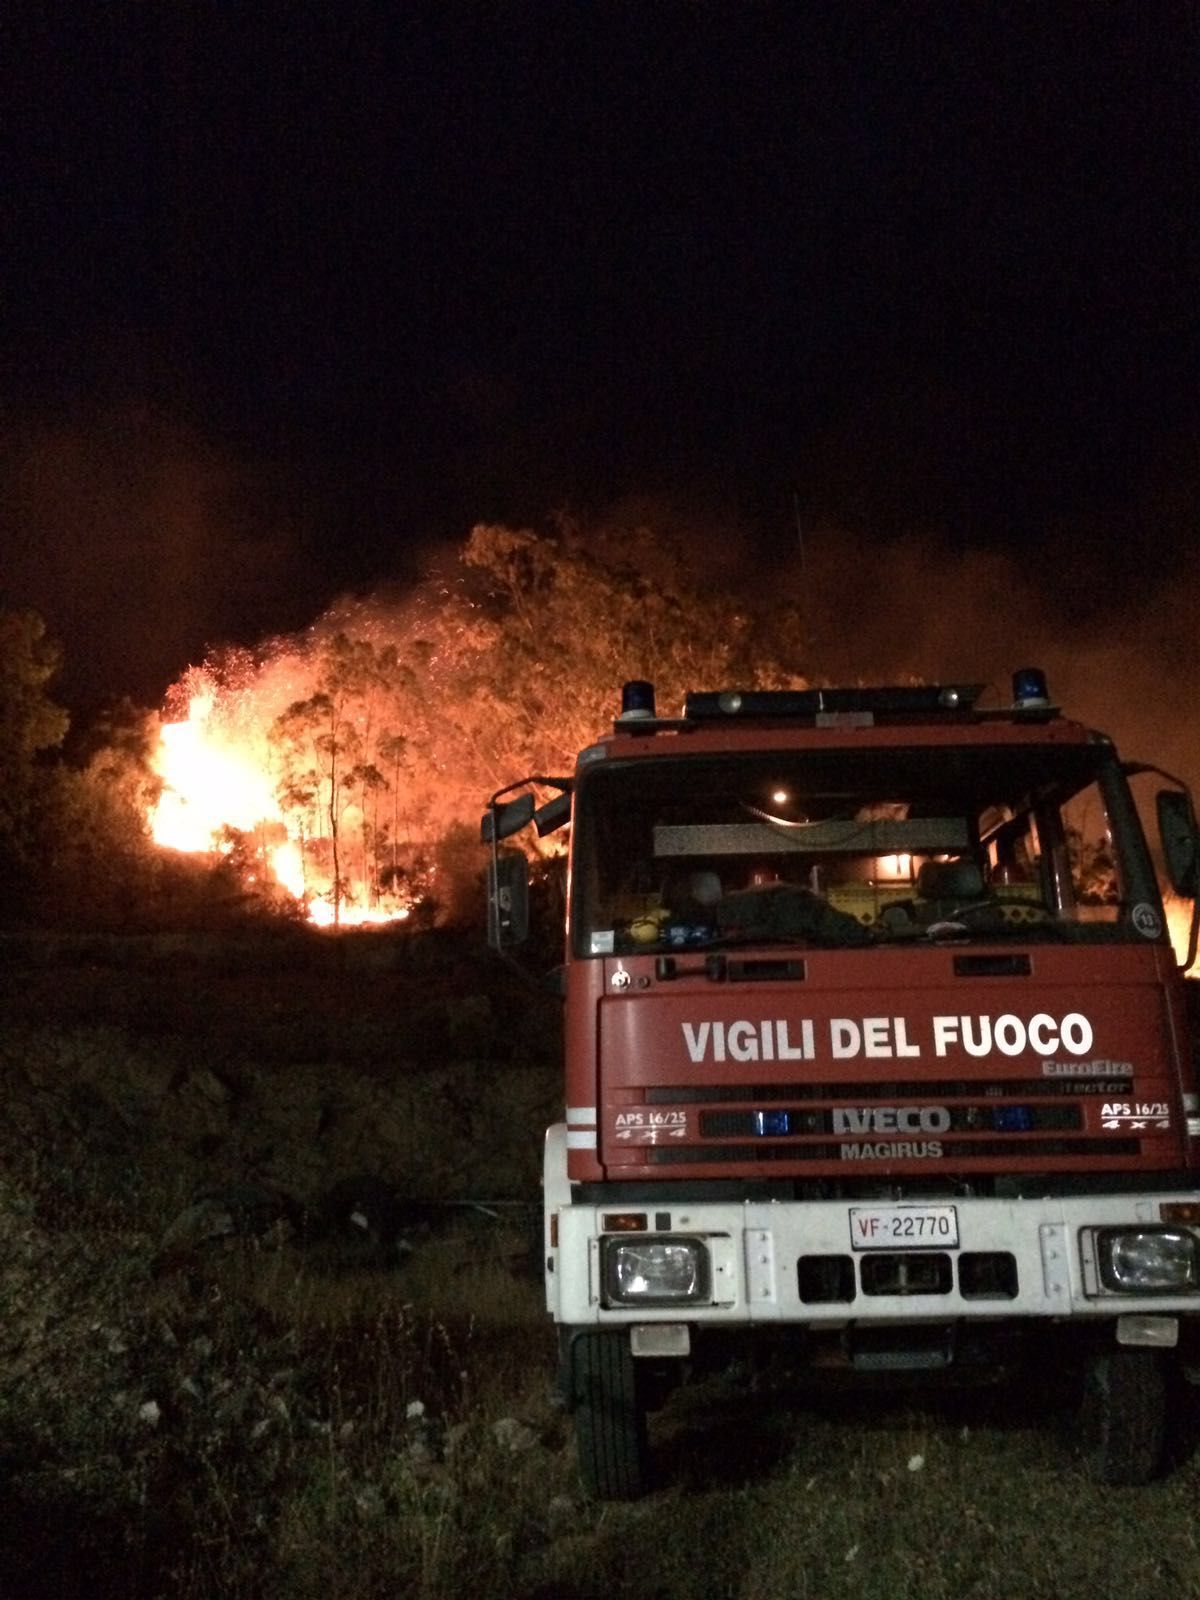 Notte di fuoco a Siniscola, Orosei e Macomer: tre attentati incendiari nella notte